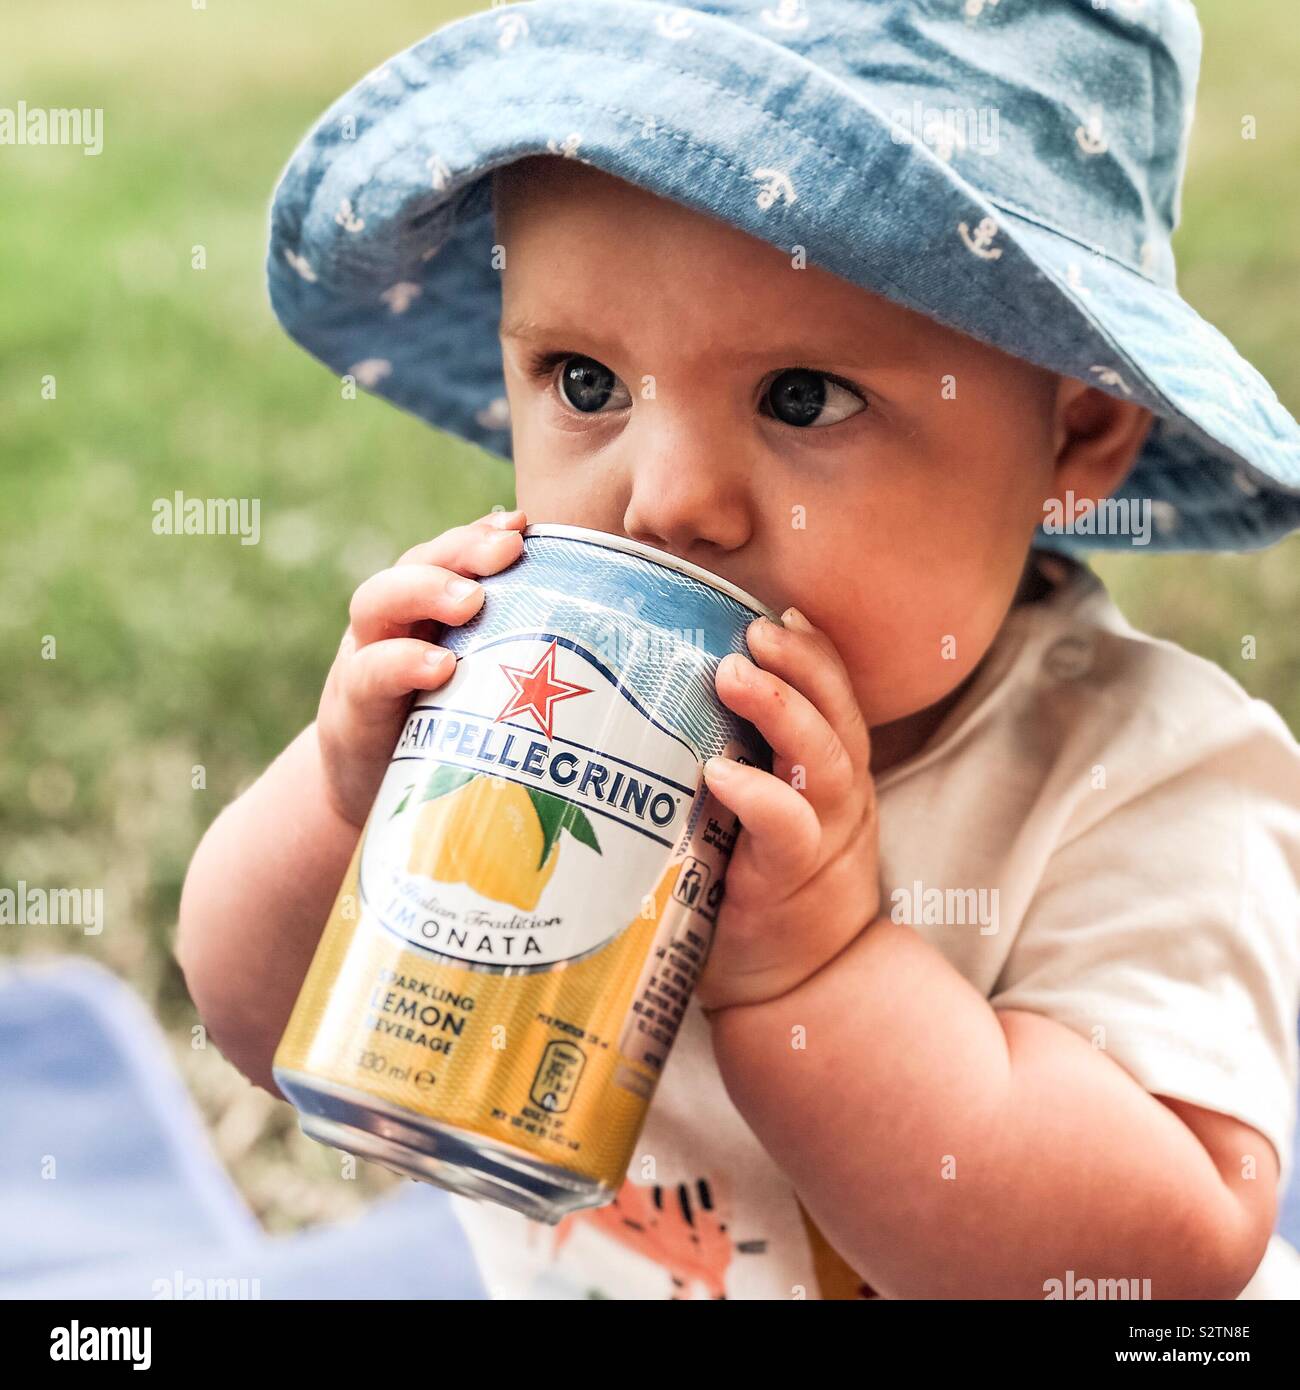 Baby Boy, à l'été, boire de la limonade sanpellegrino peut porter un chapeau bleu Banque D'Images